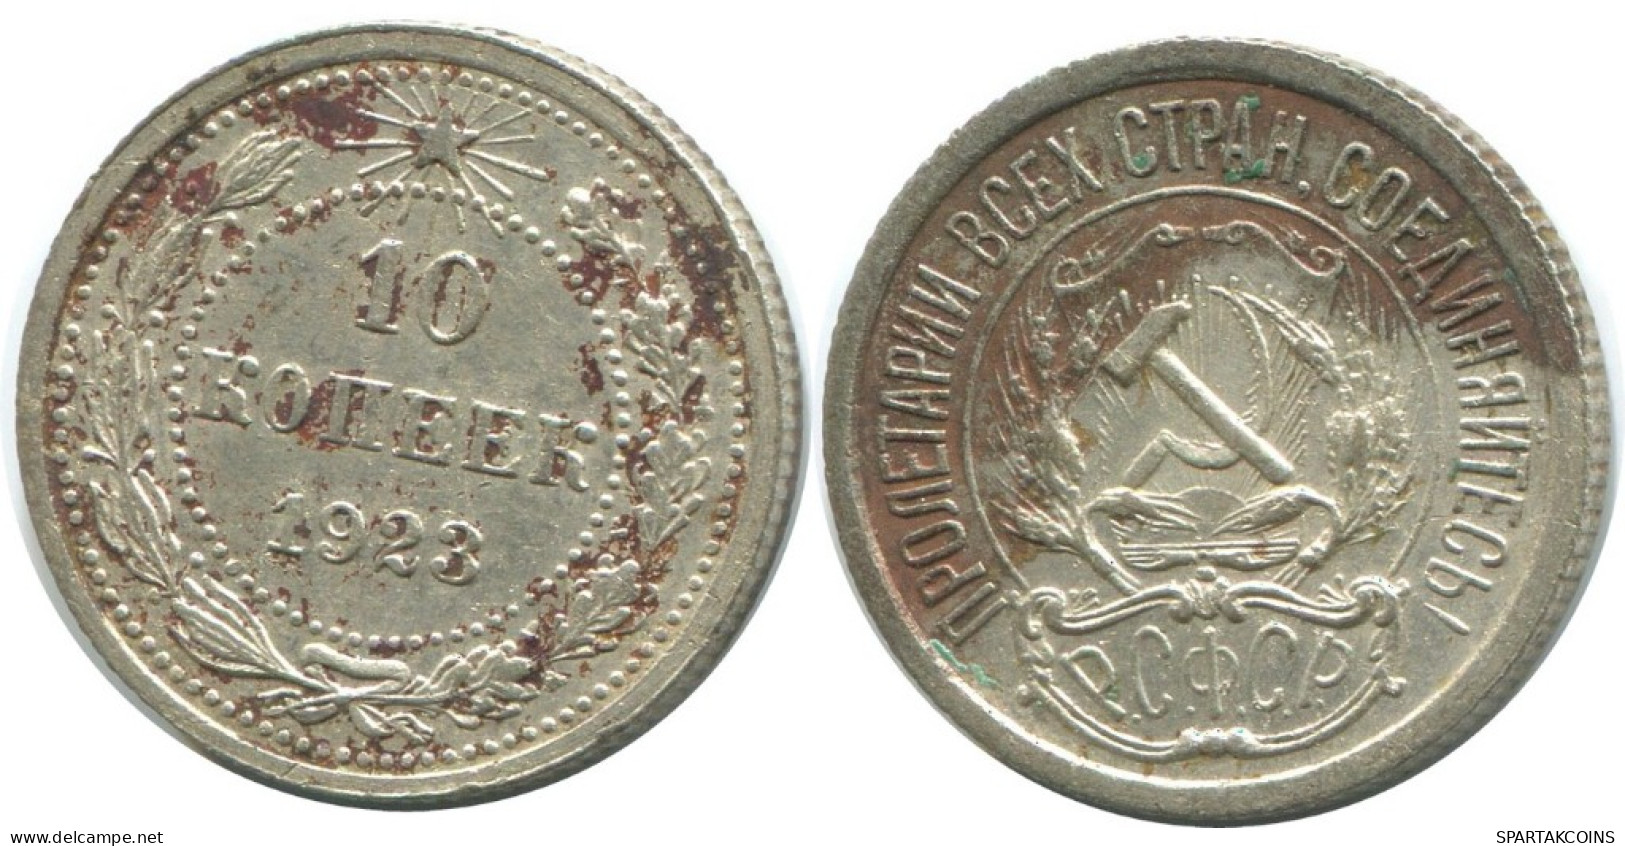 10 KOPEKS 1923 RUSSLAND RUSSIA RSFSR SILBER Münze HIGH GRADE #AE936.4.D.A - Russia